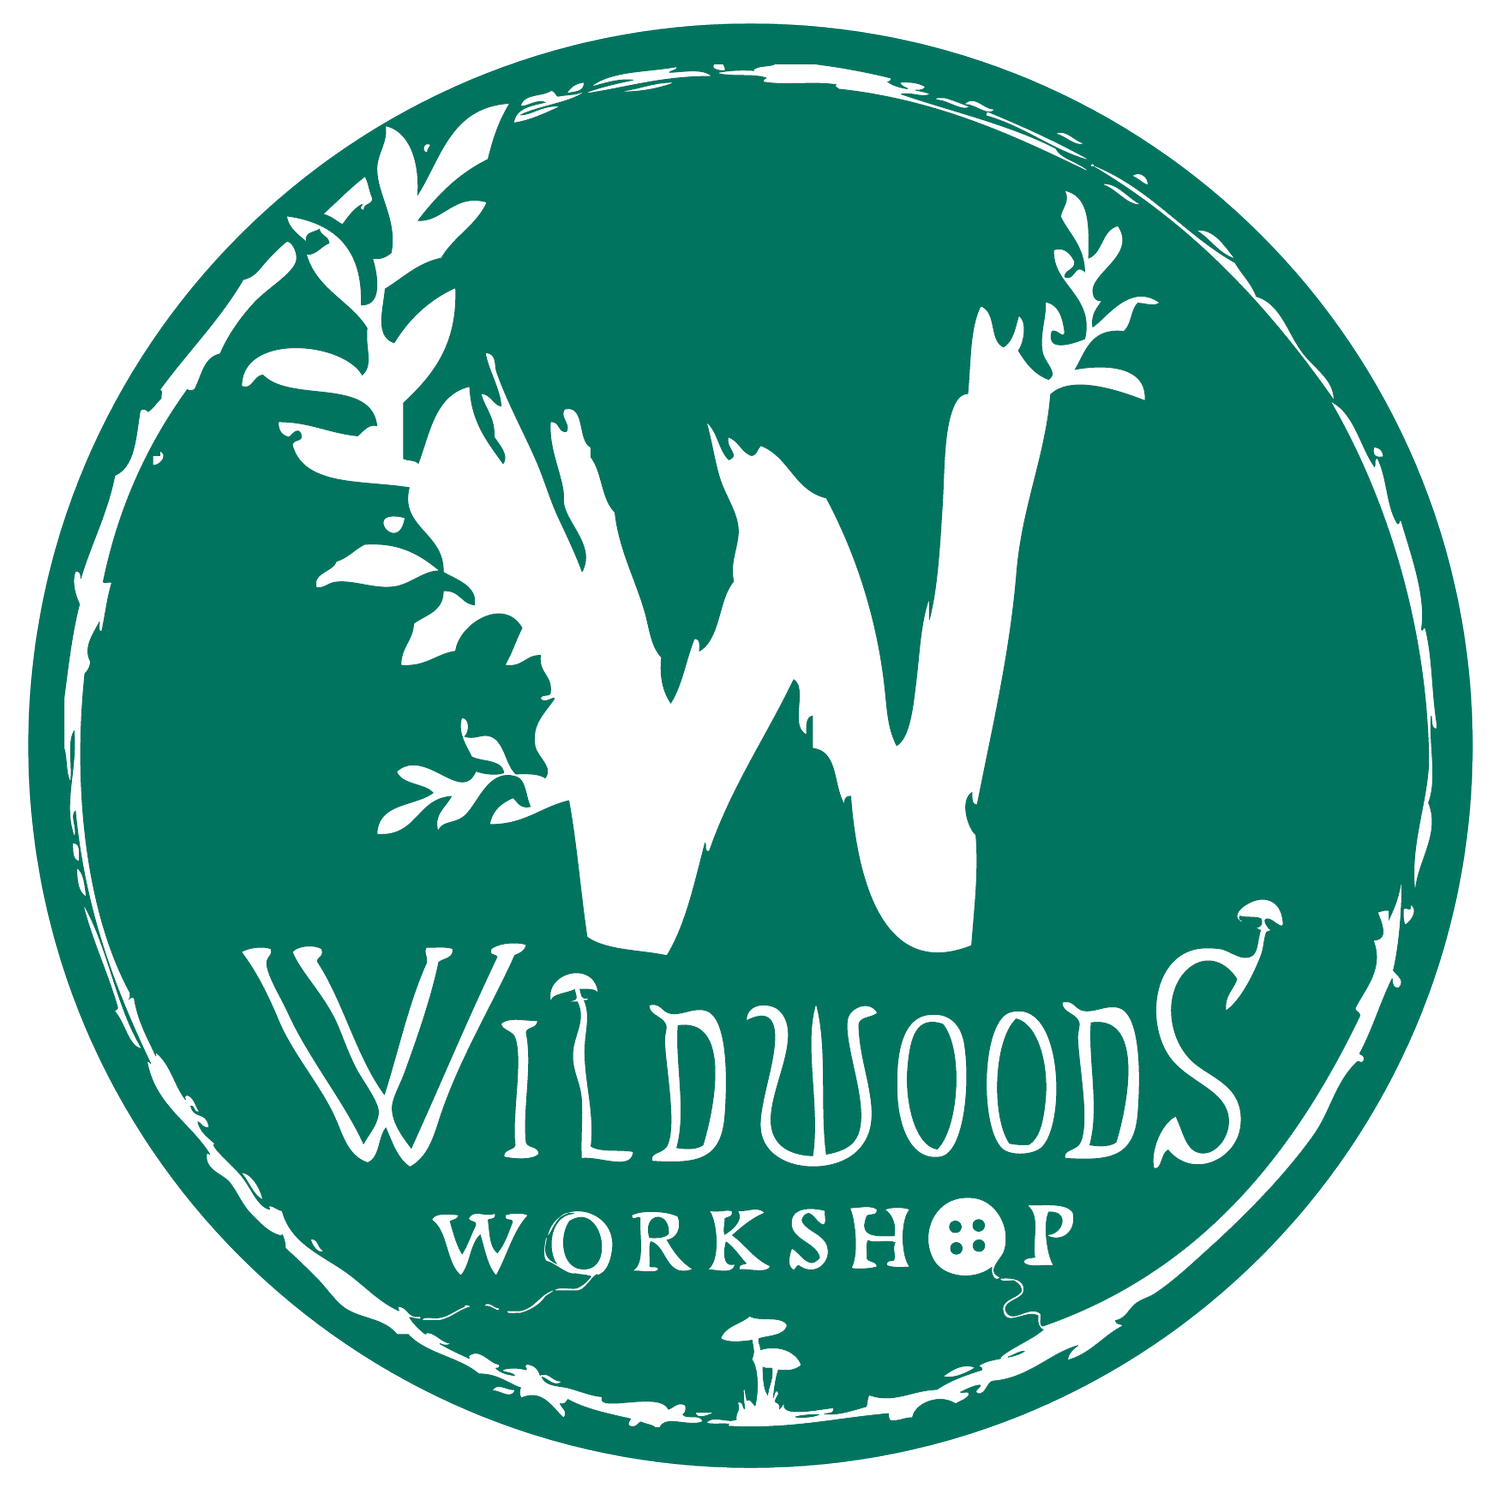 Wildwoods Workshop